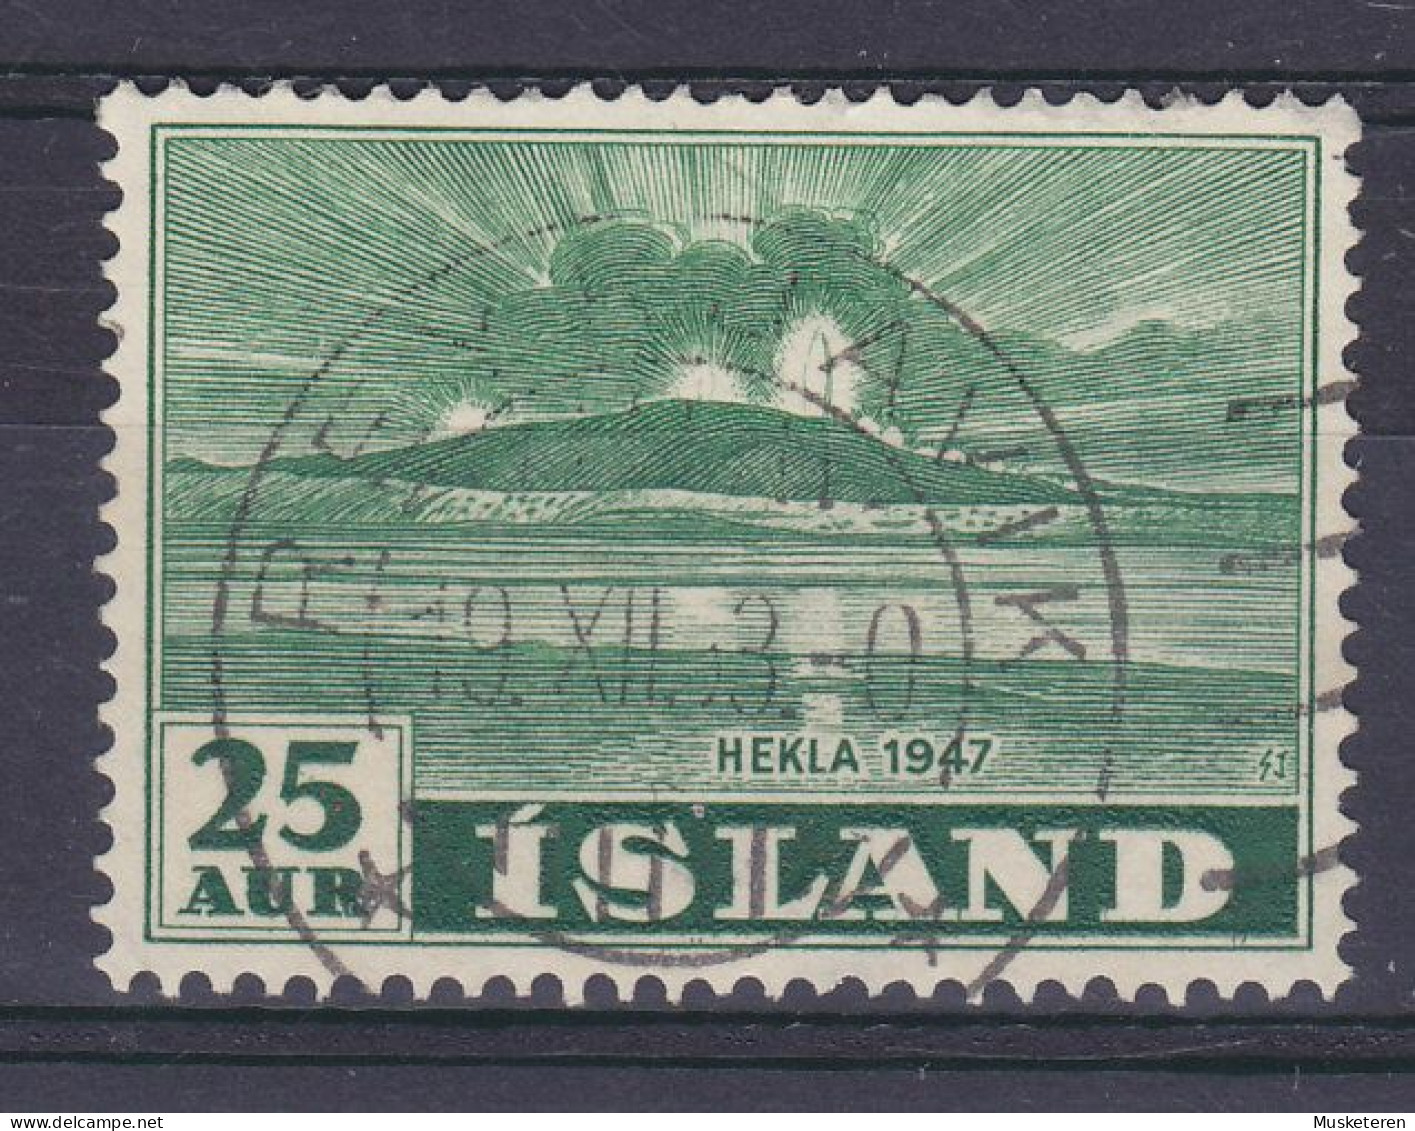 Iceland 1948 Mi. 248, 25 Aur Vulkan Vom Meer Aus Gesehen Deluxe REYKJAVIK Cancel !! - Usati